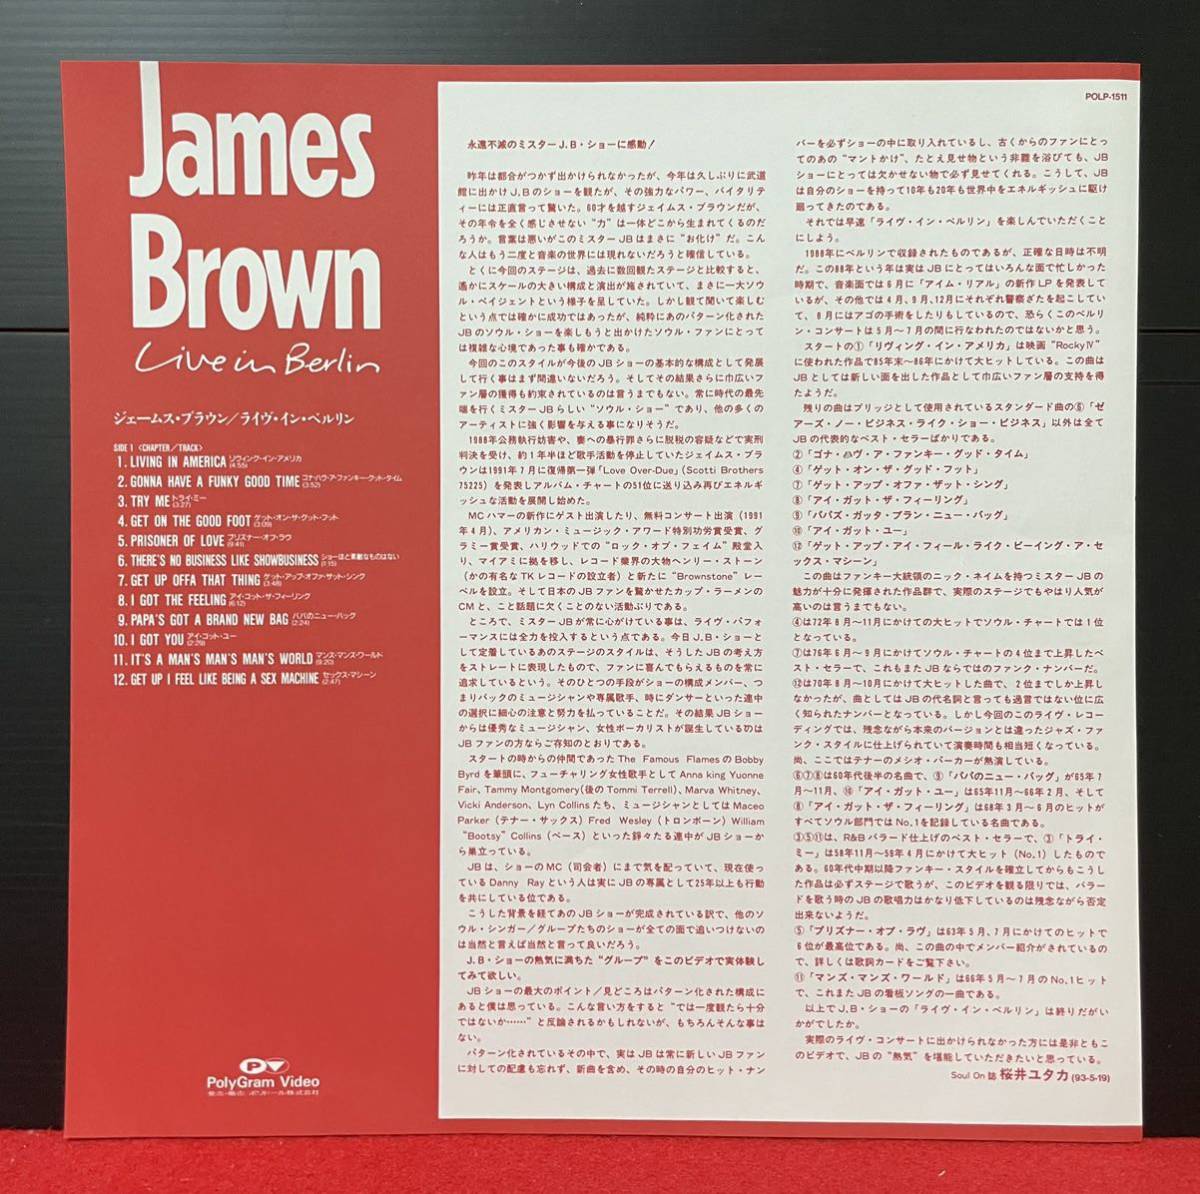 LD запись James Brown / Live In Berlin лазерный диск 12inch размер к тому же Pro motion запись редкость запись популярный запись большое количество лот.